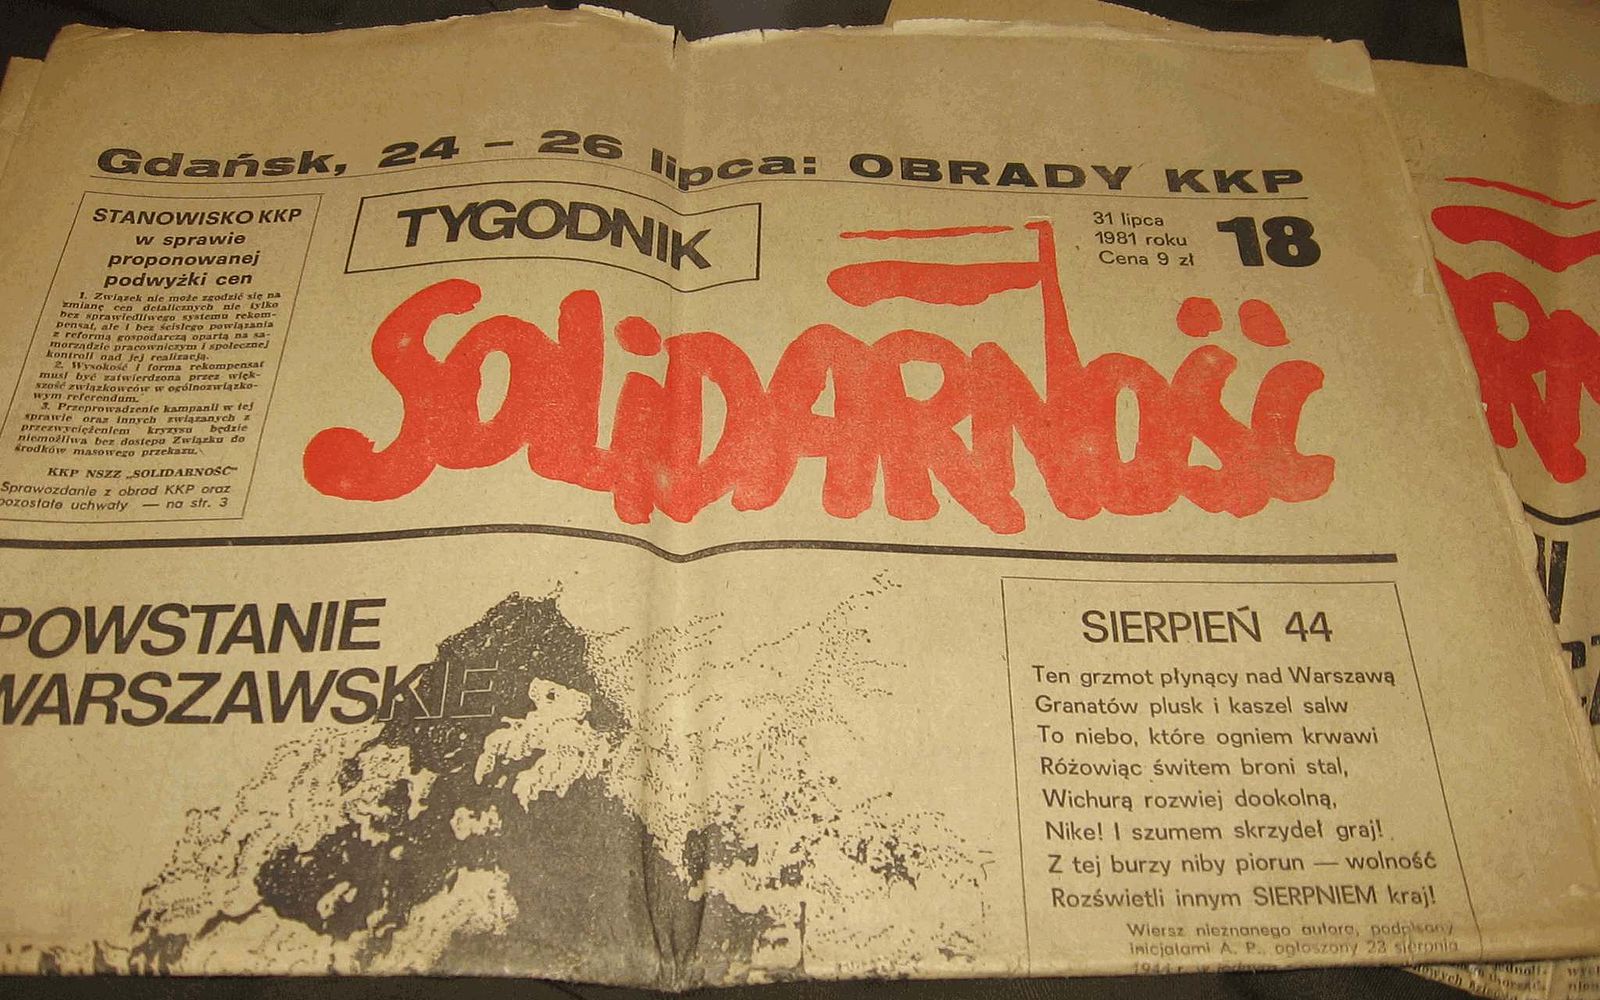 Pologne, 1980 : Solidarnosc et l'expérience révolutionnaire | L'Anticapitaliste